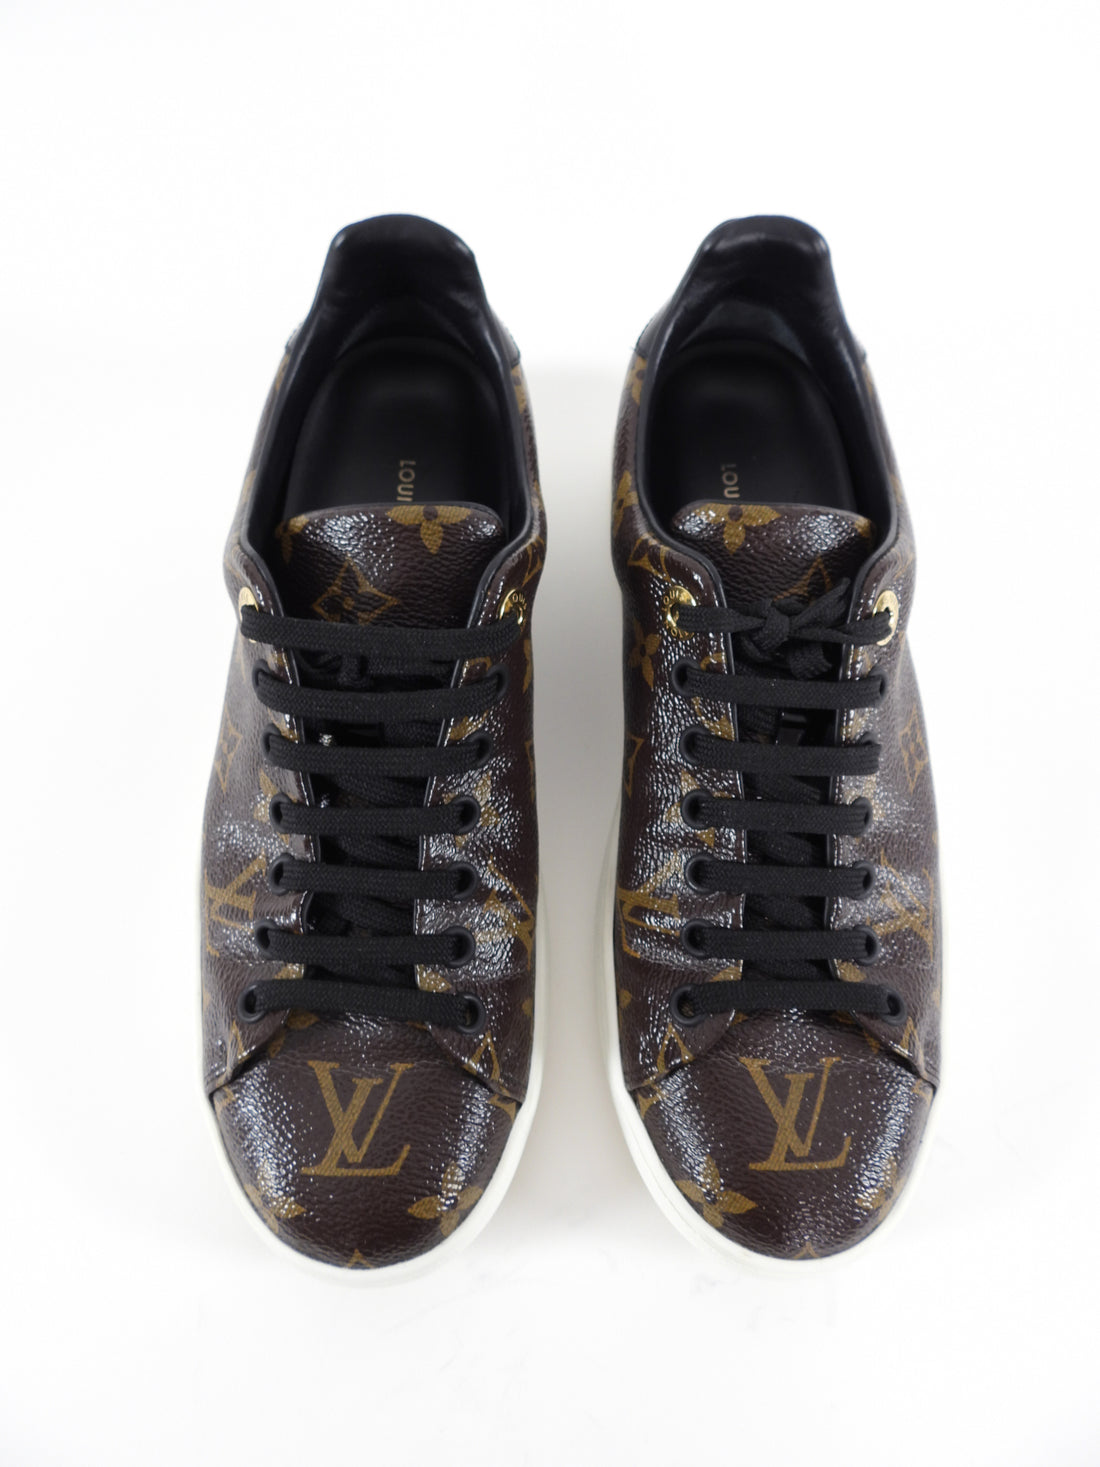 Womens LOUIS VUITTON Sneaker Size US 6  eBay